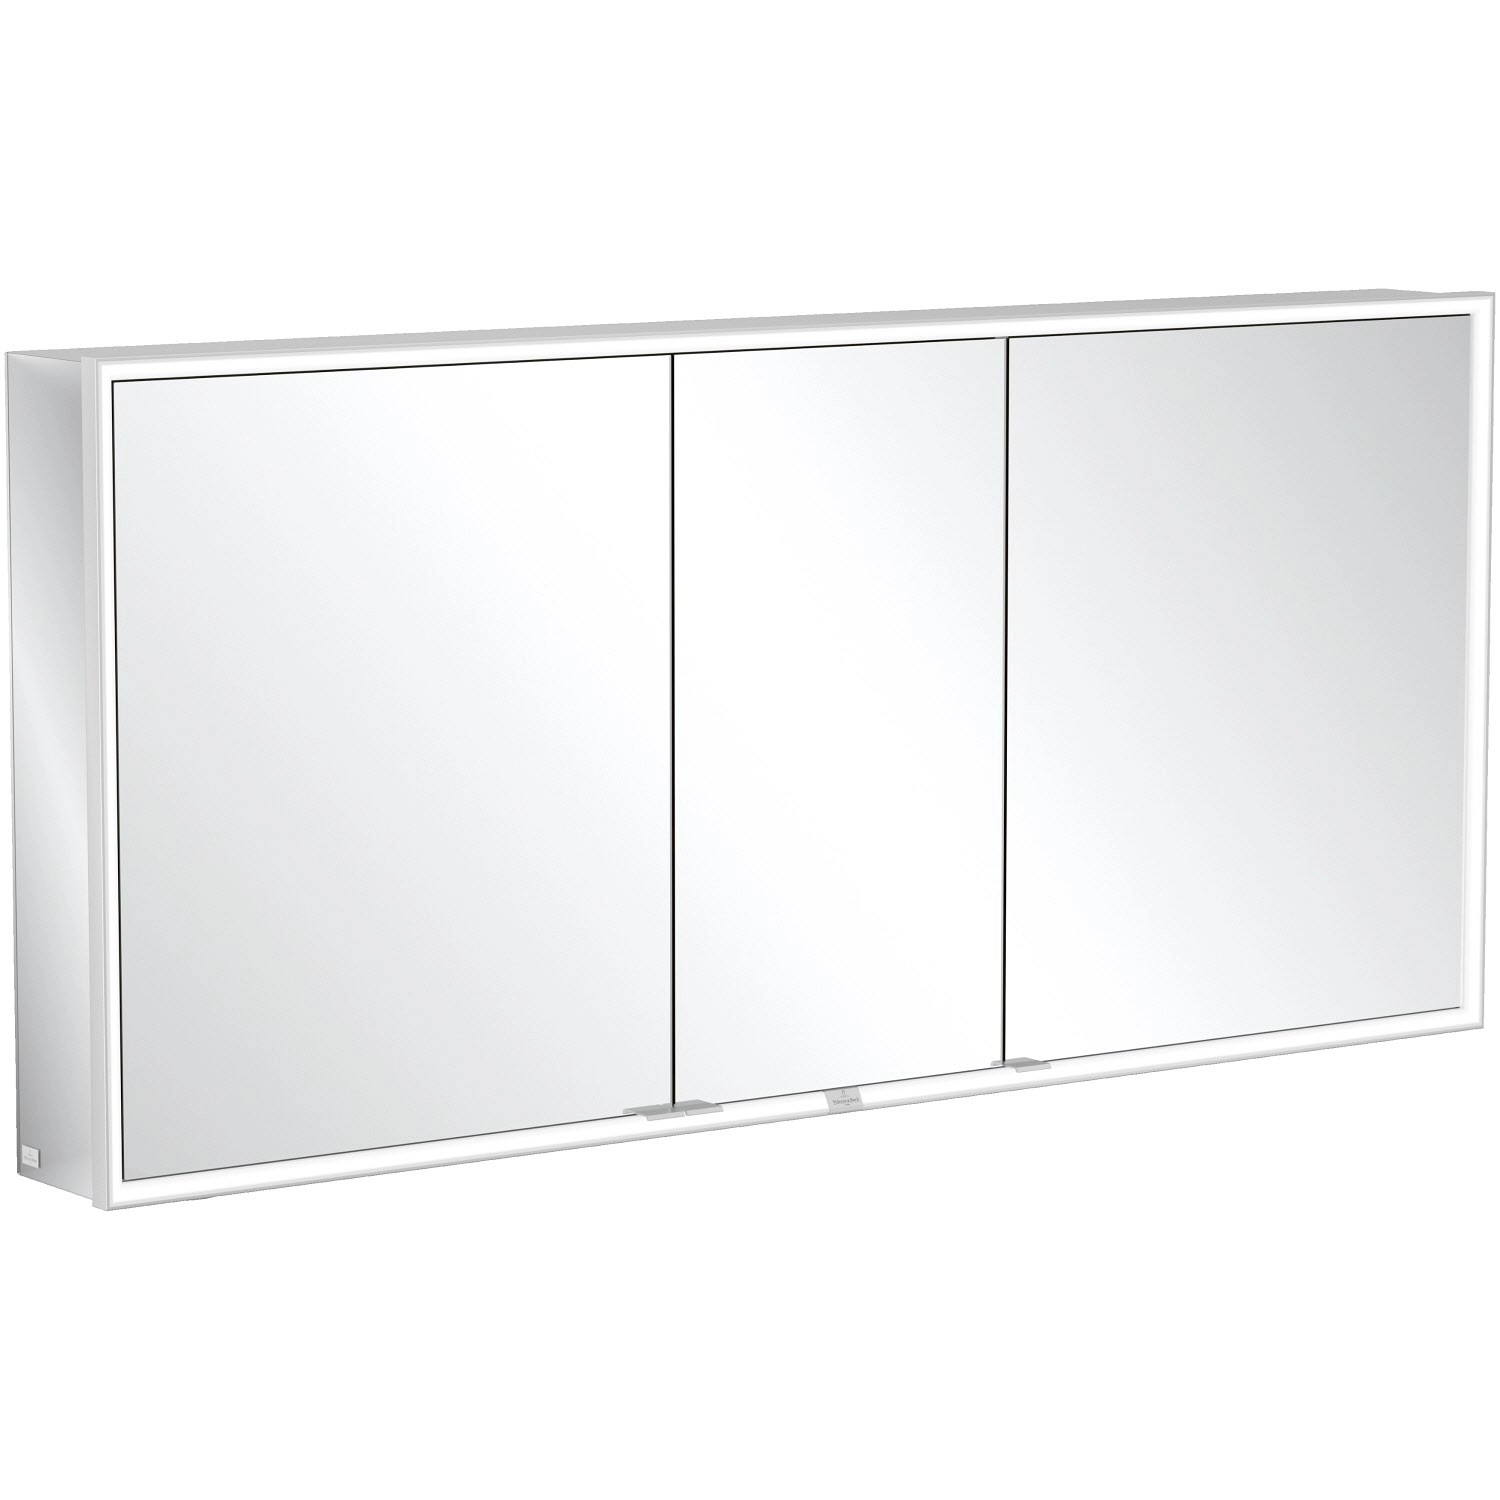 Villeroy & Boch Vorbau-Spiegelschrank 160 cm My View Now 3 Türen Smart Home